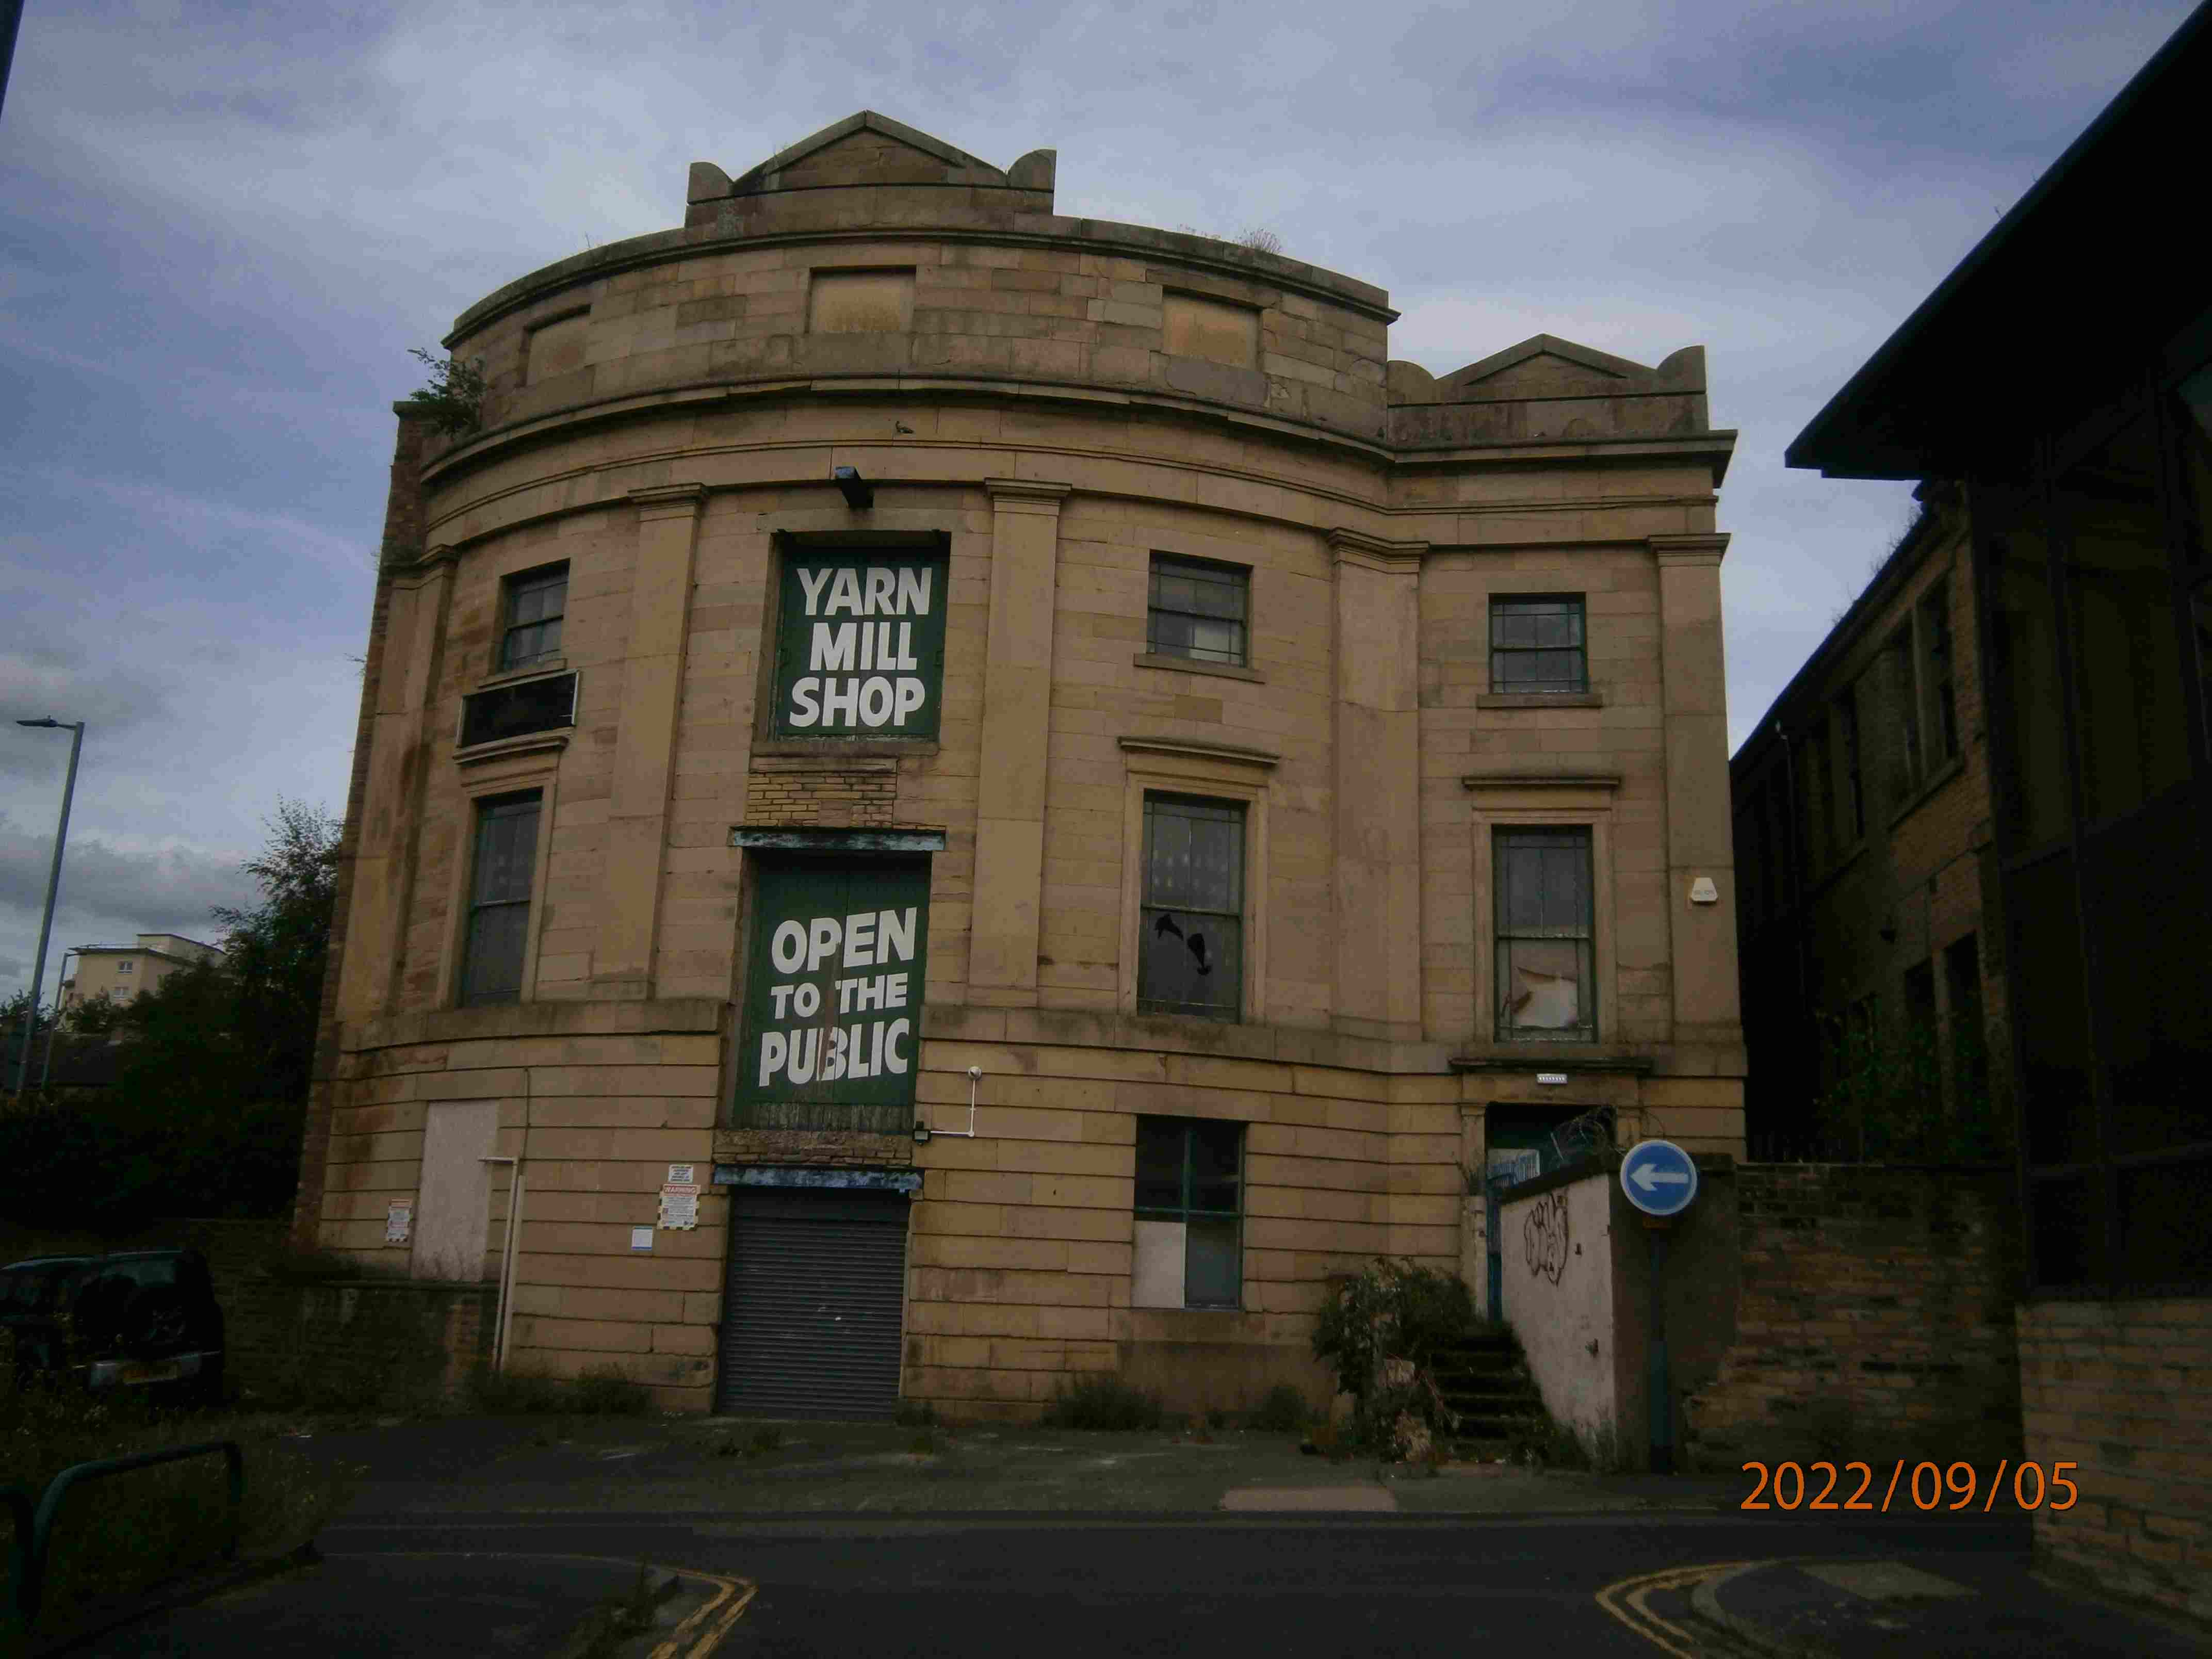 College Mill (Upper Ground Floor), Bradford, West Yorkshire, BD1 4AU